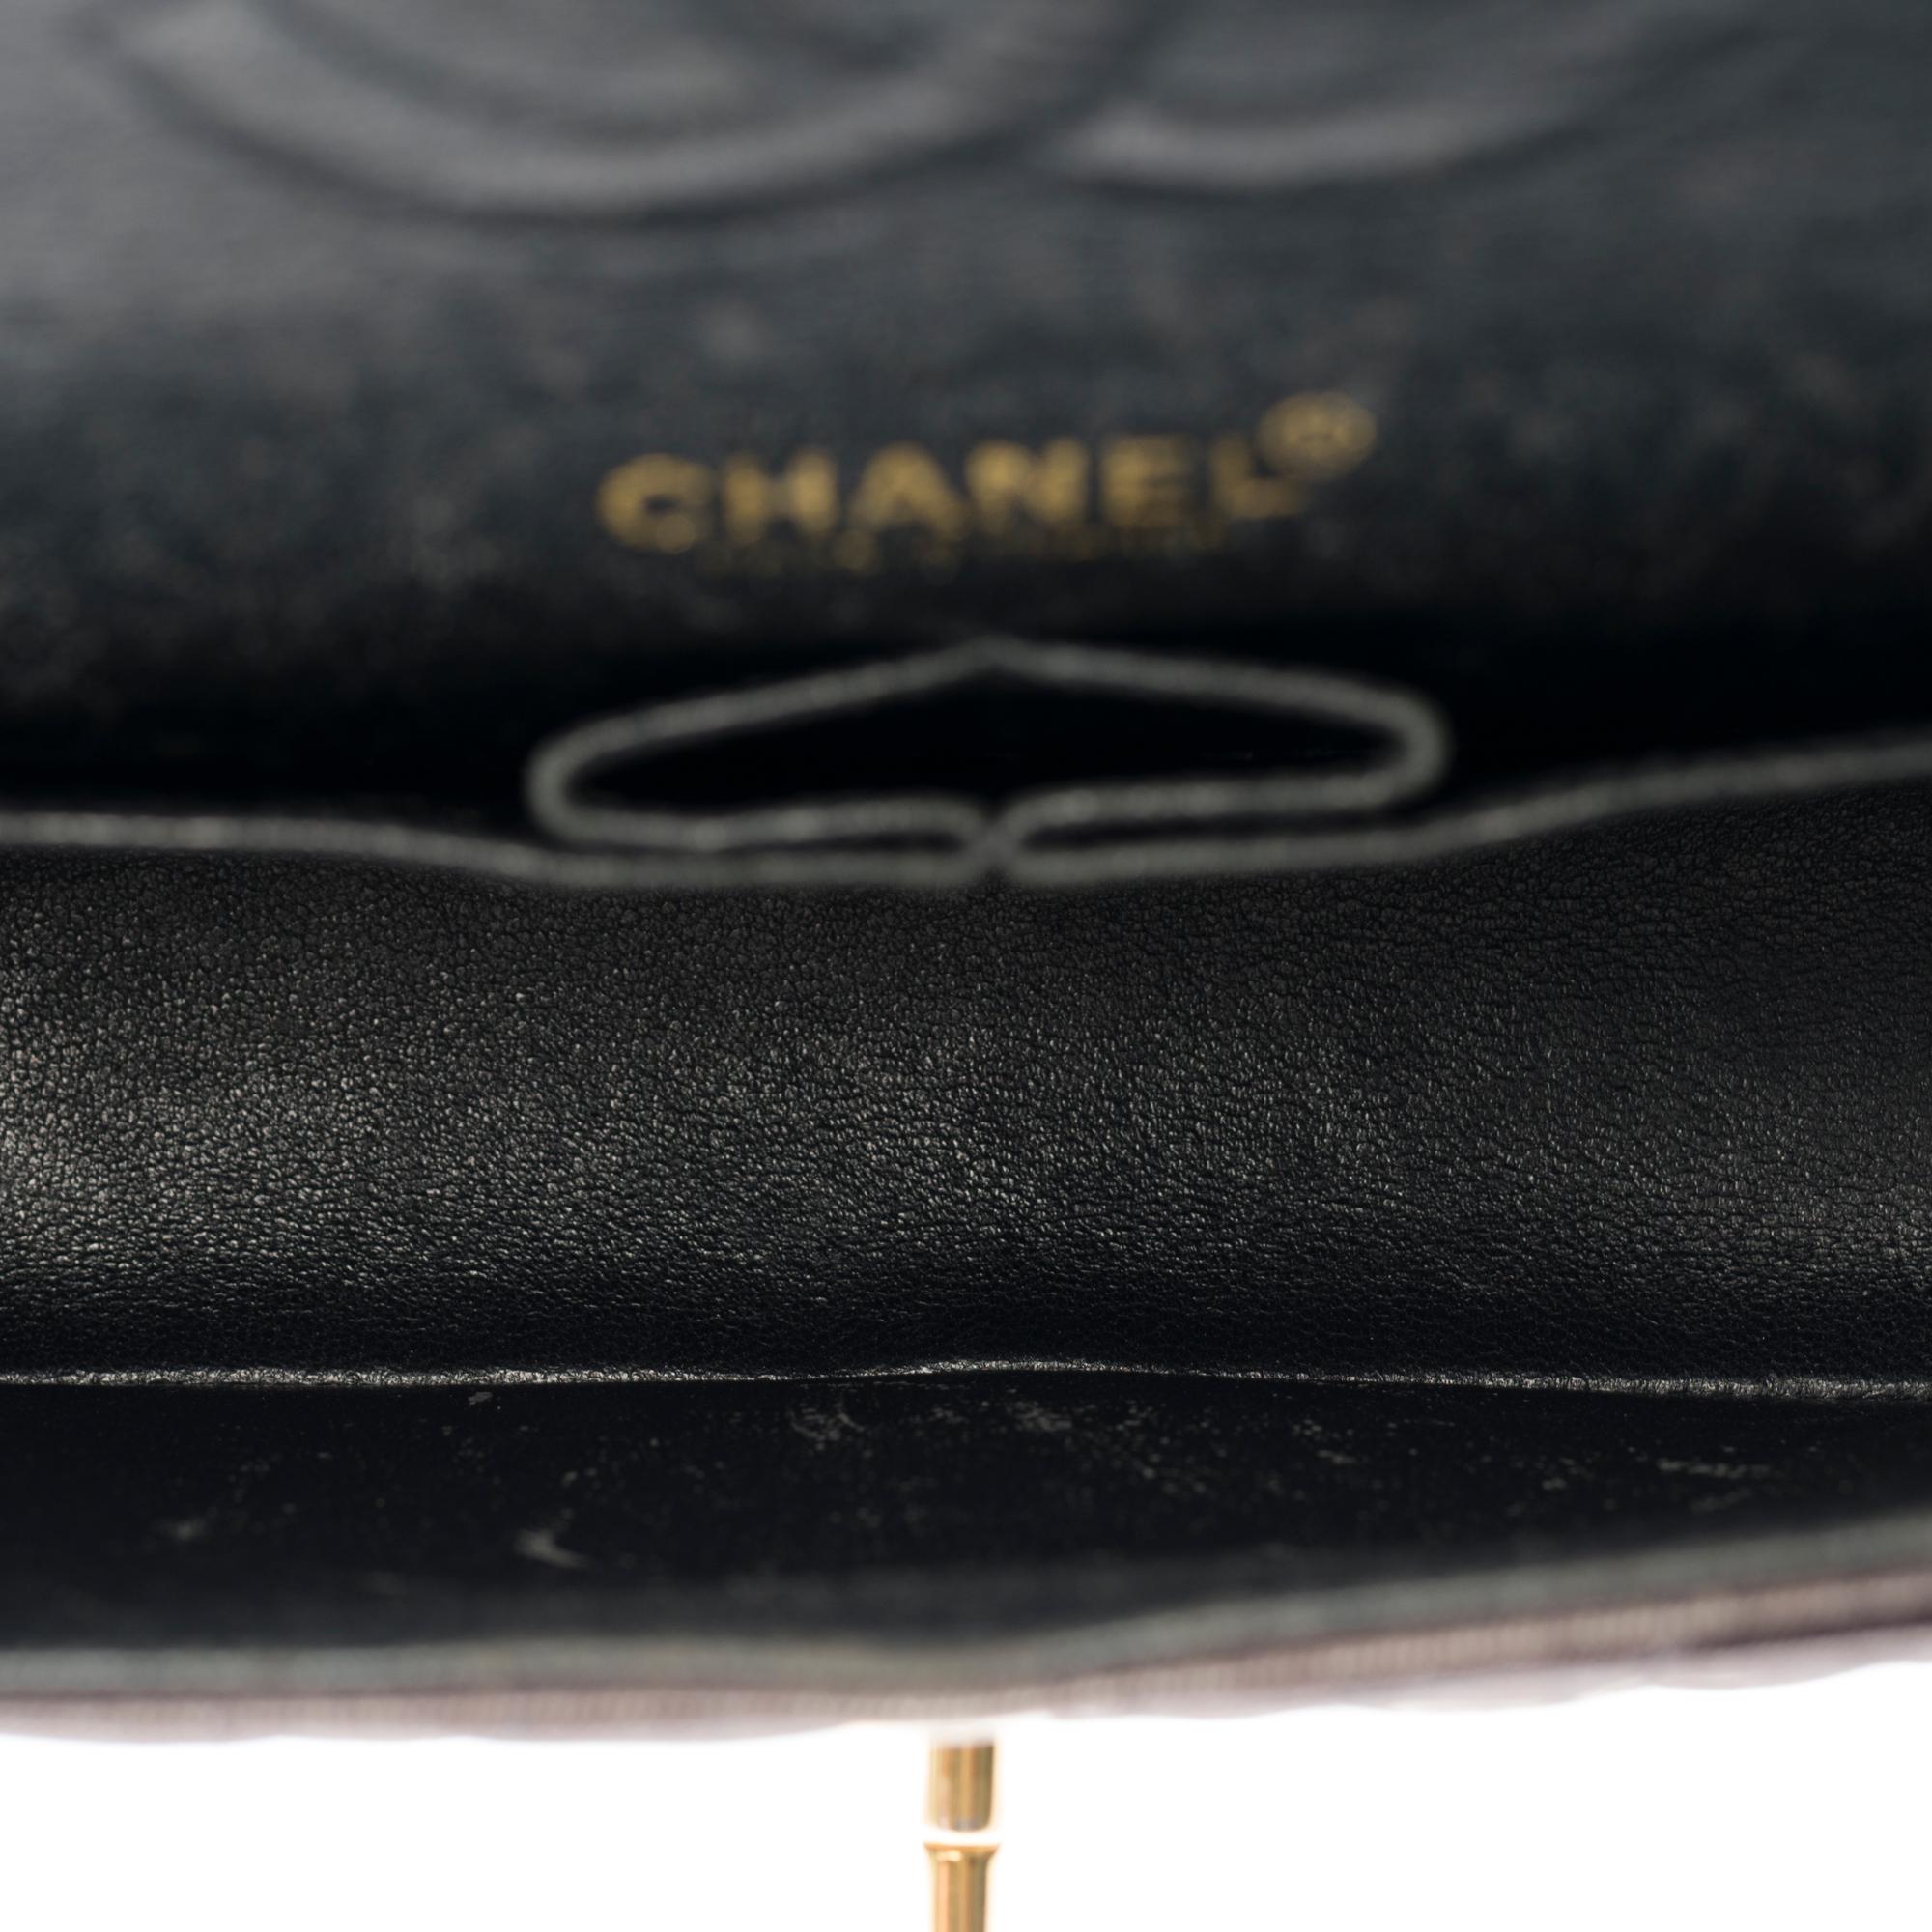 Rare Chanel 2.55 